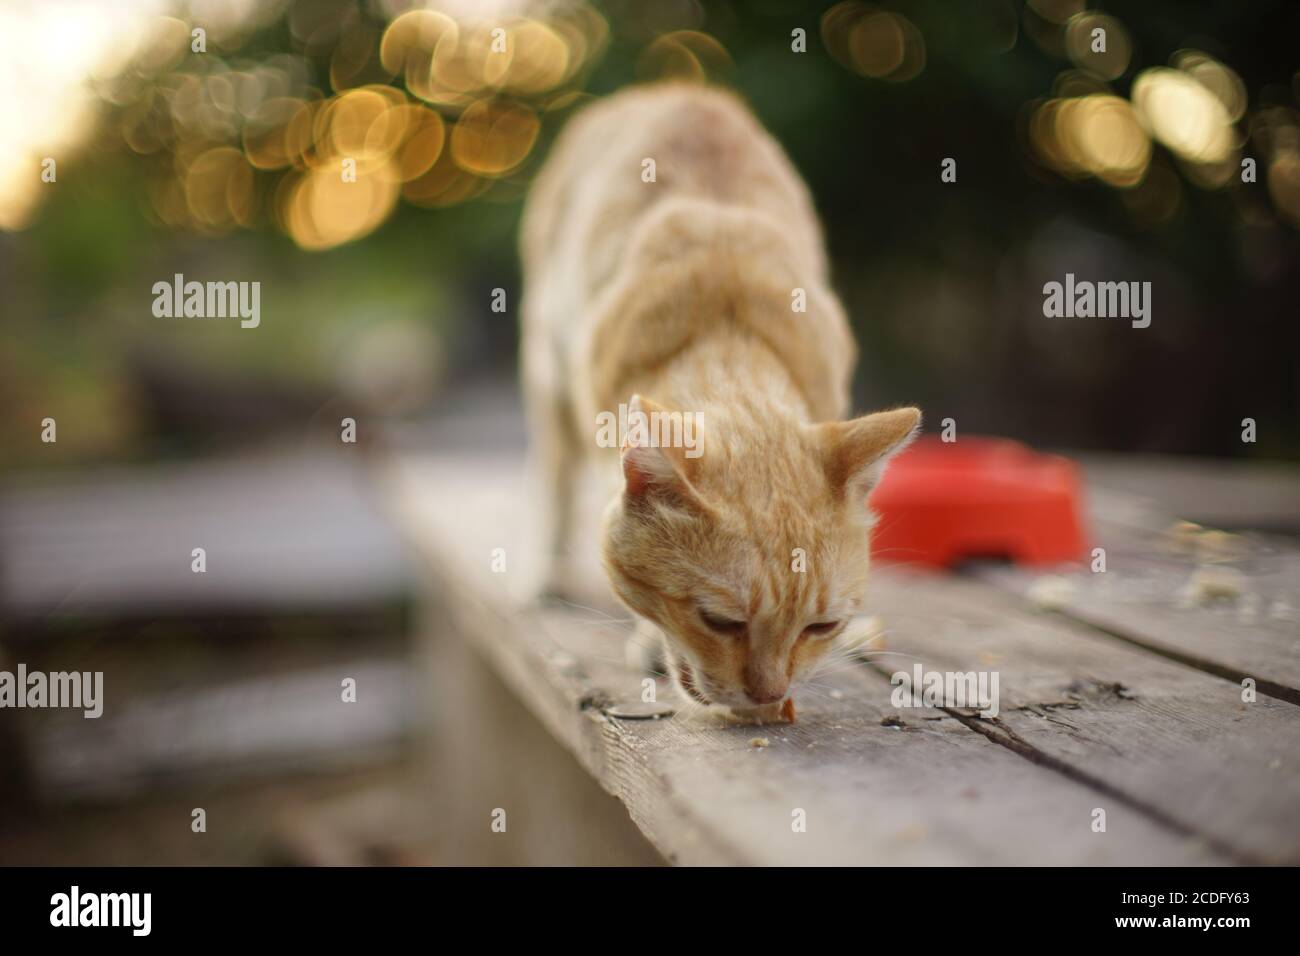 Lovely ginger cat eating bread in summer garden Stock Photo